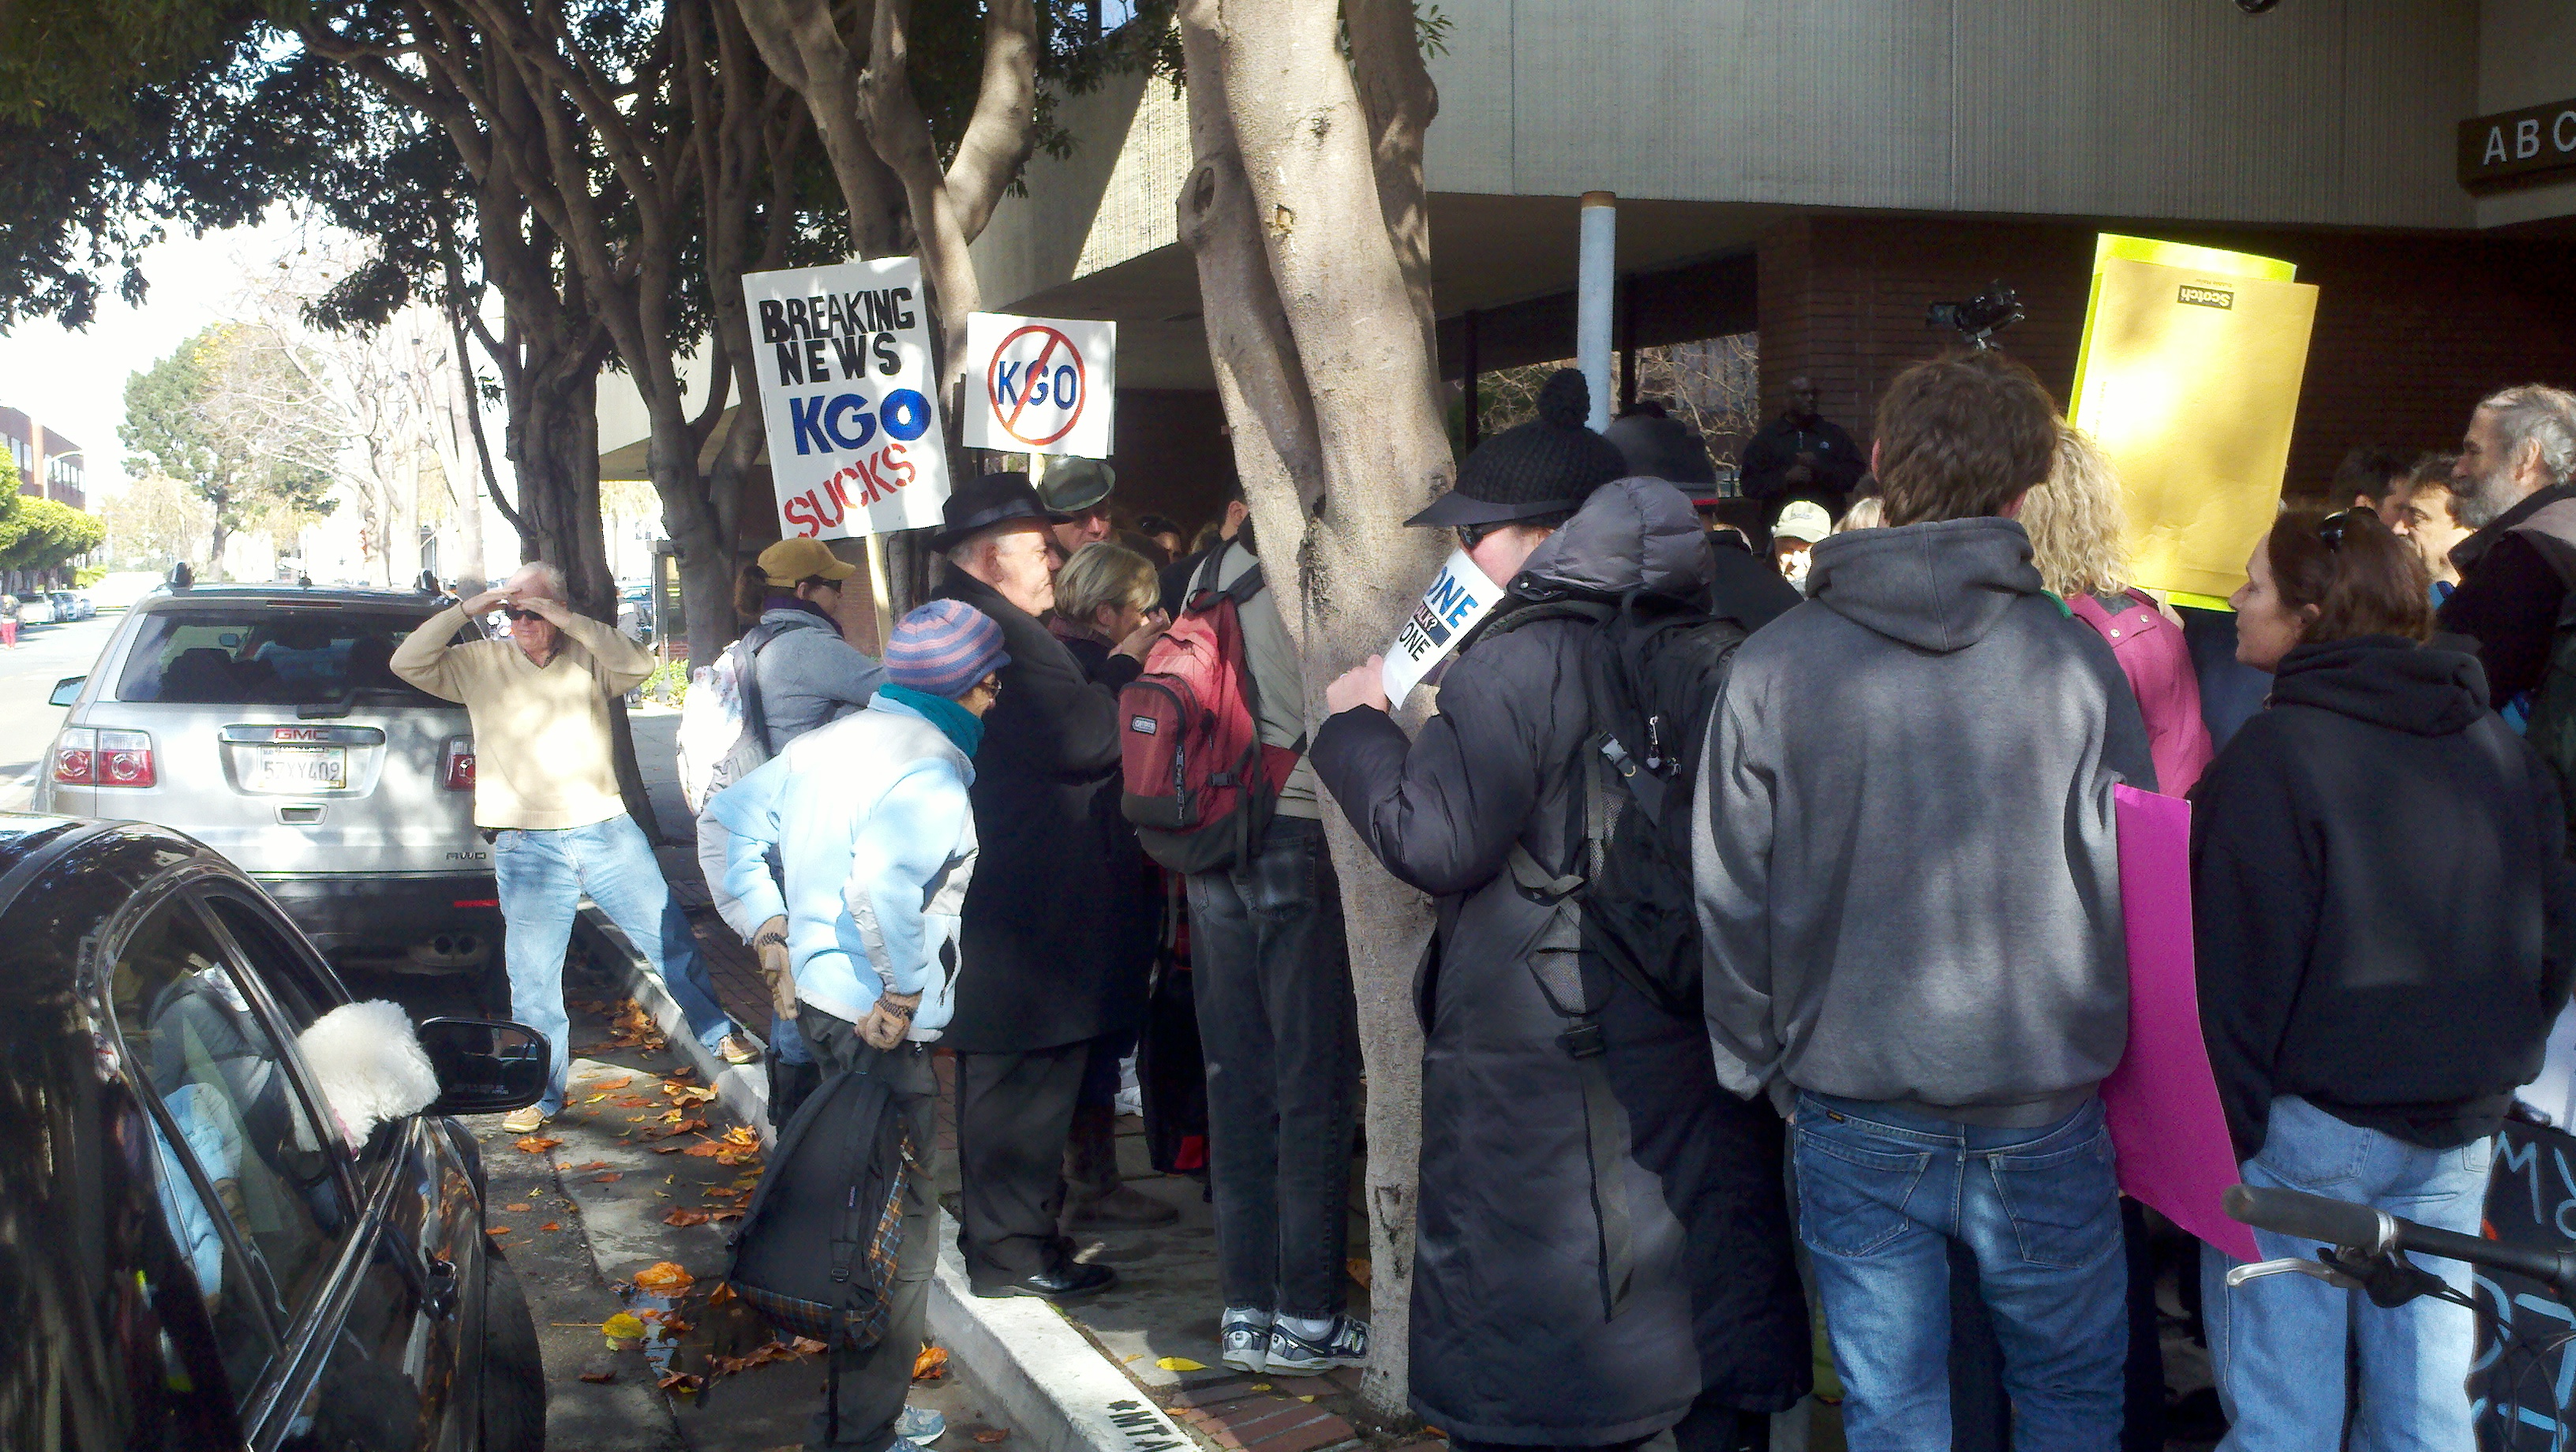 Occupy KGO! Scenes from a San Francisco demonstration - Radio Survivor